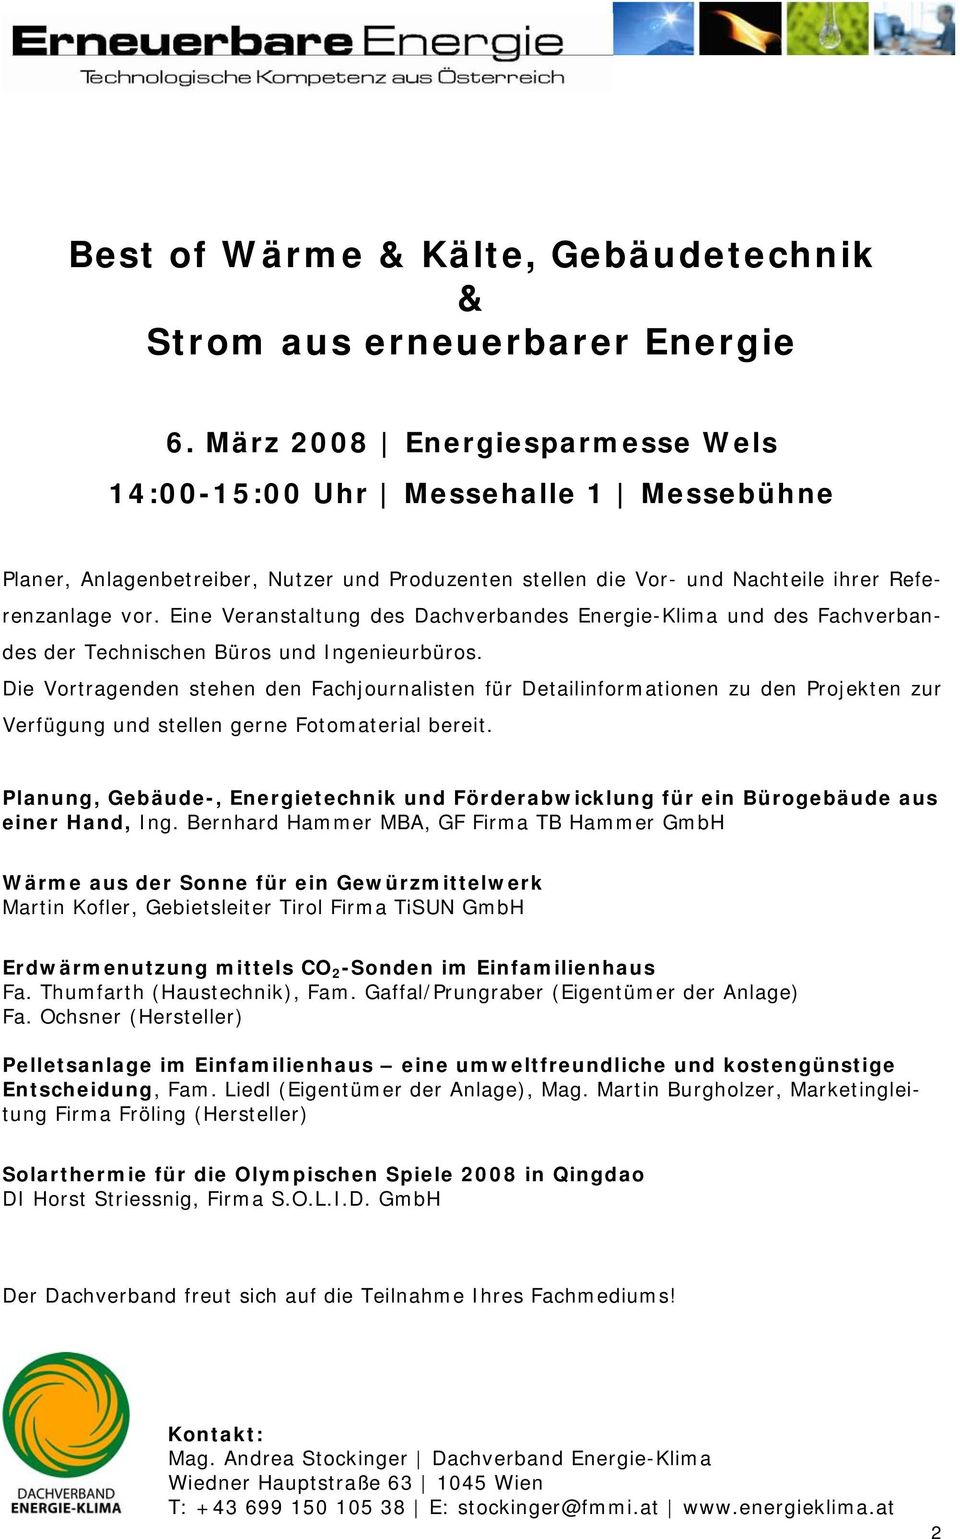 Eine Veranstaltung des Dachverbandes Energie-Klima und des Fachverbandes der Technischen Büros und Ingenieurbüros.